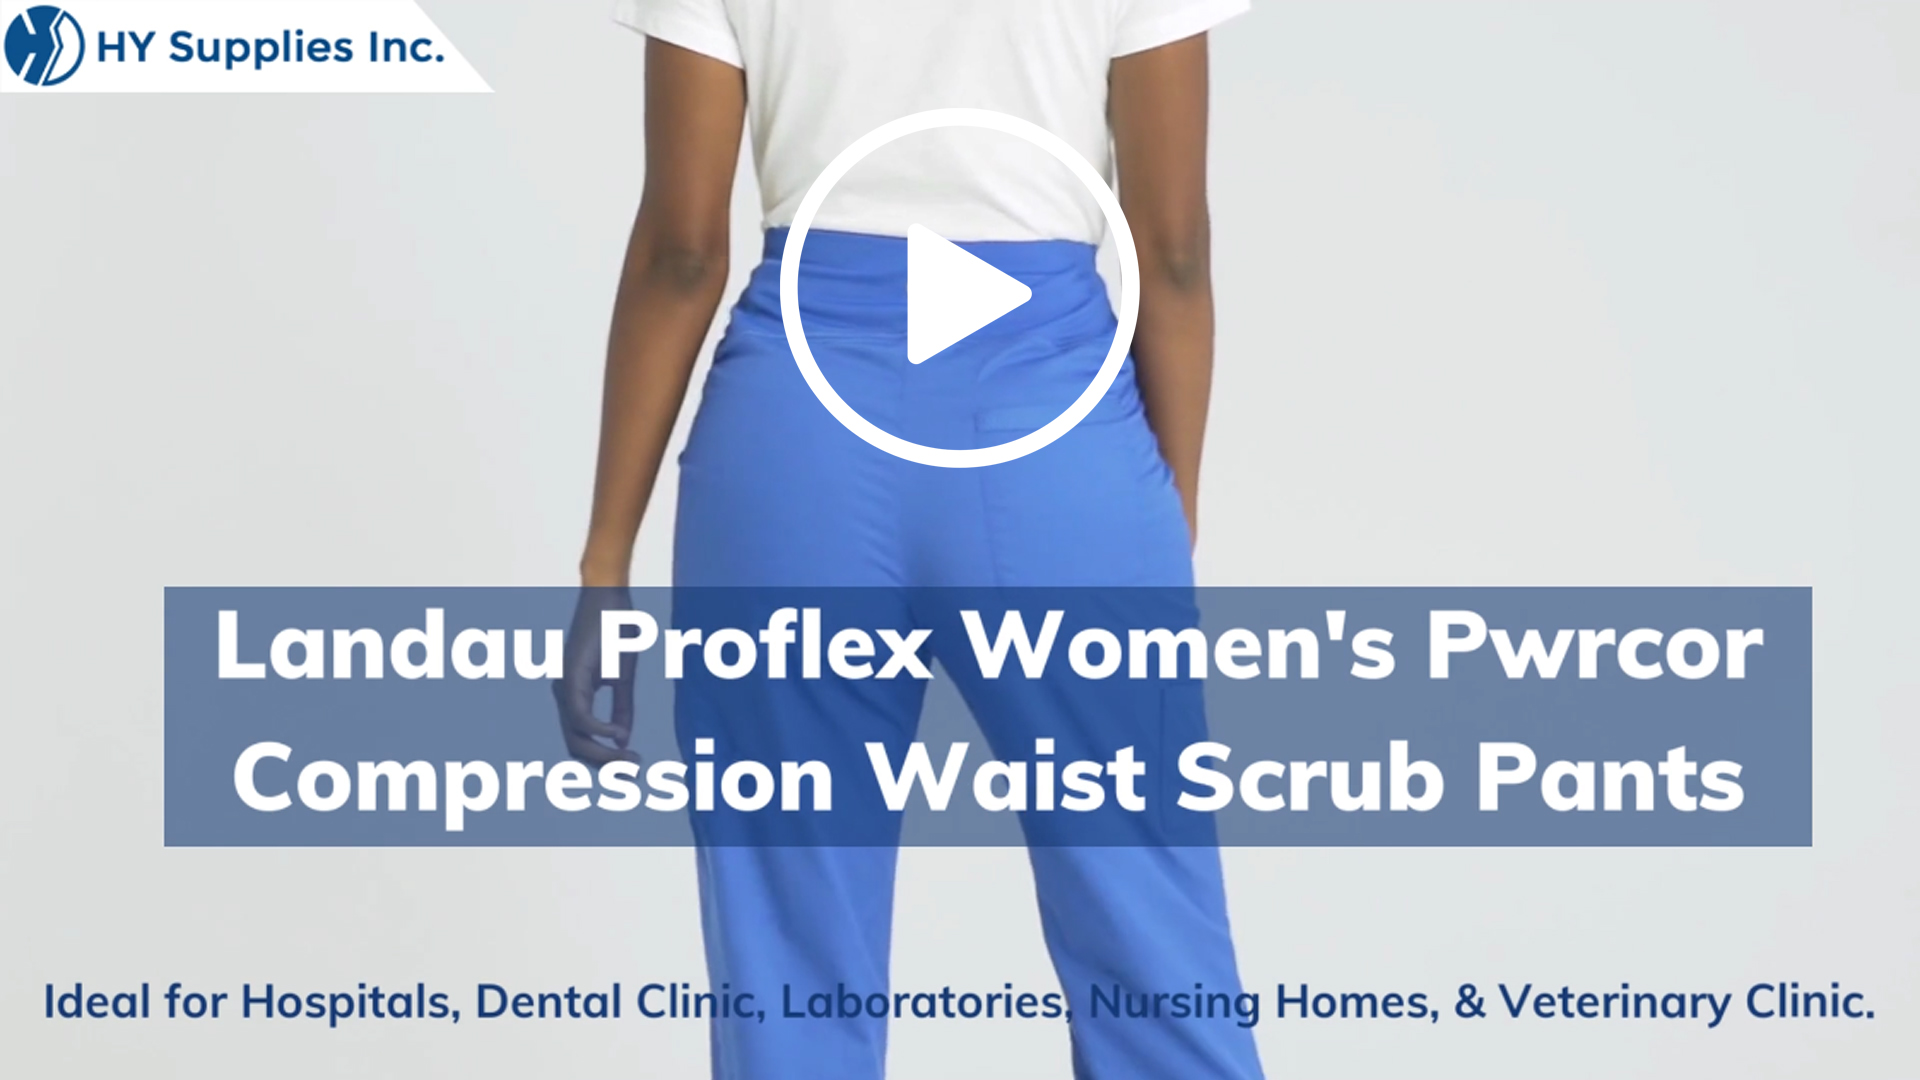 Landau Proflex Women's Pwrcor Compression Waist Scrub Pants